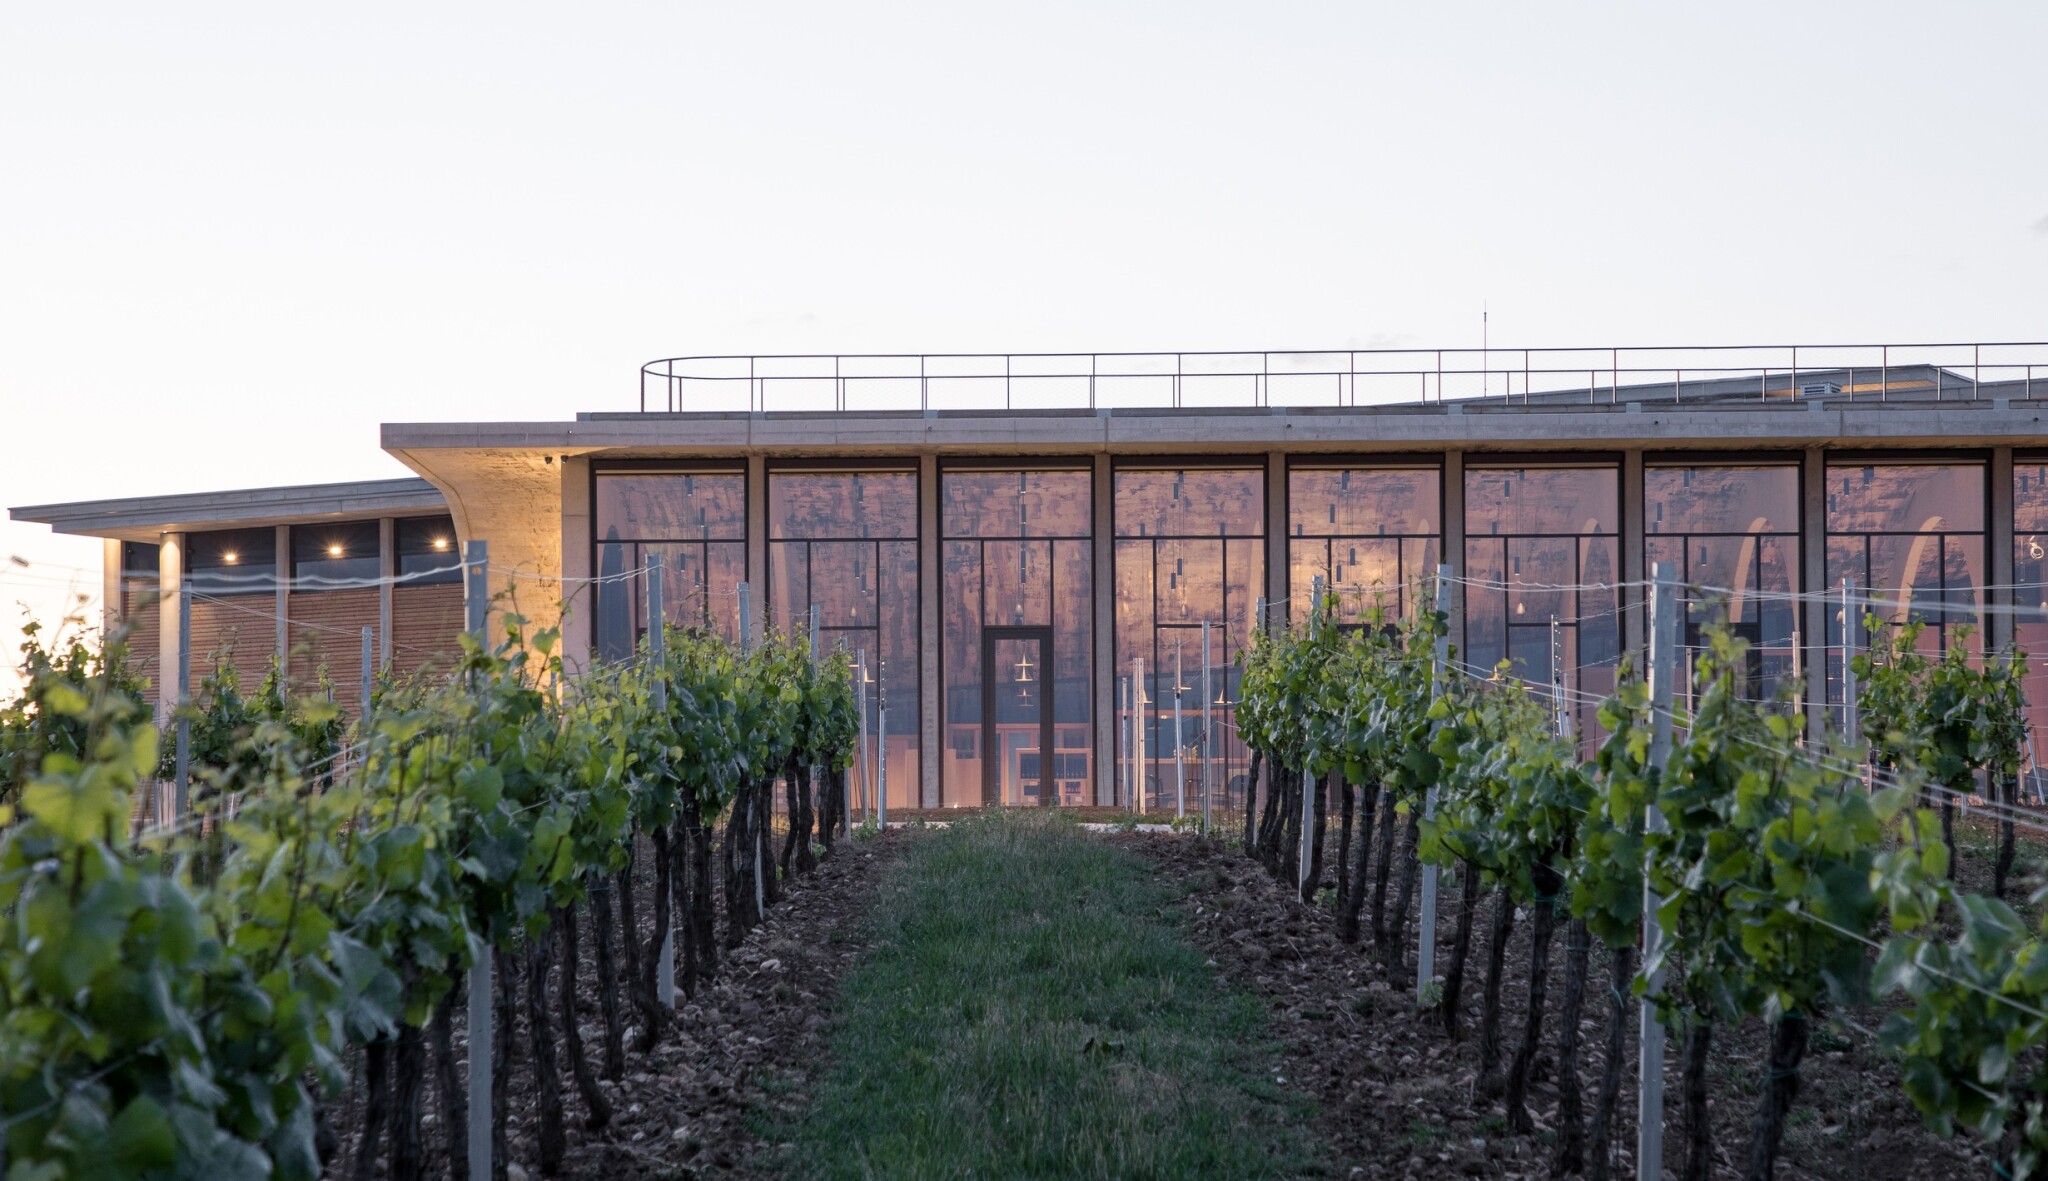 Amfiteátr mezi vinicemi. Prohlédněte si novou budovu Vinařství Lahofer od architektů Chybík + Krištof